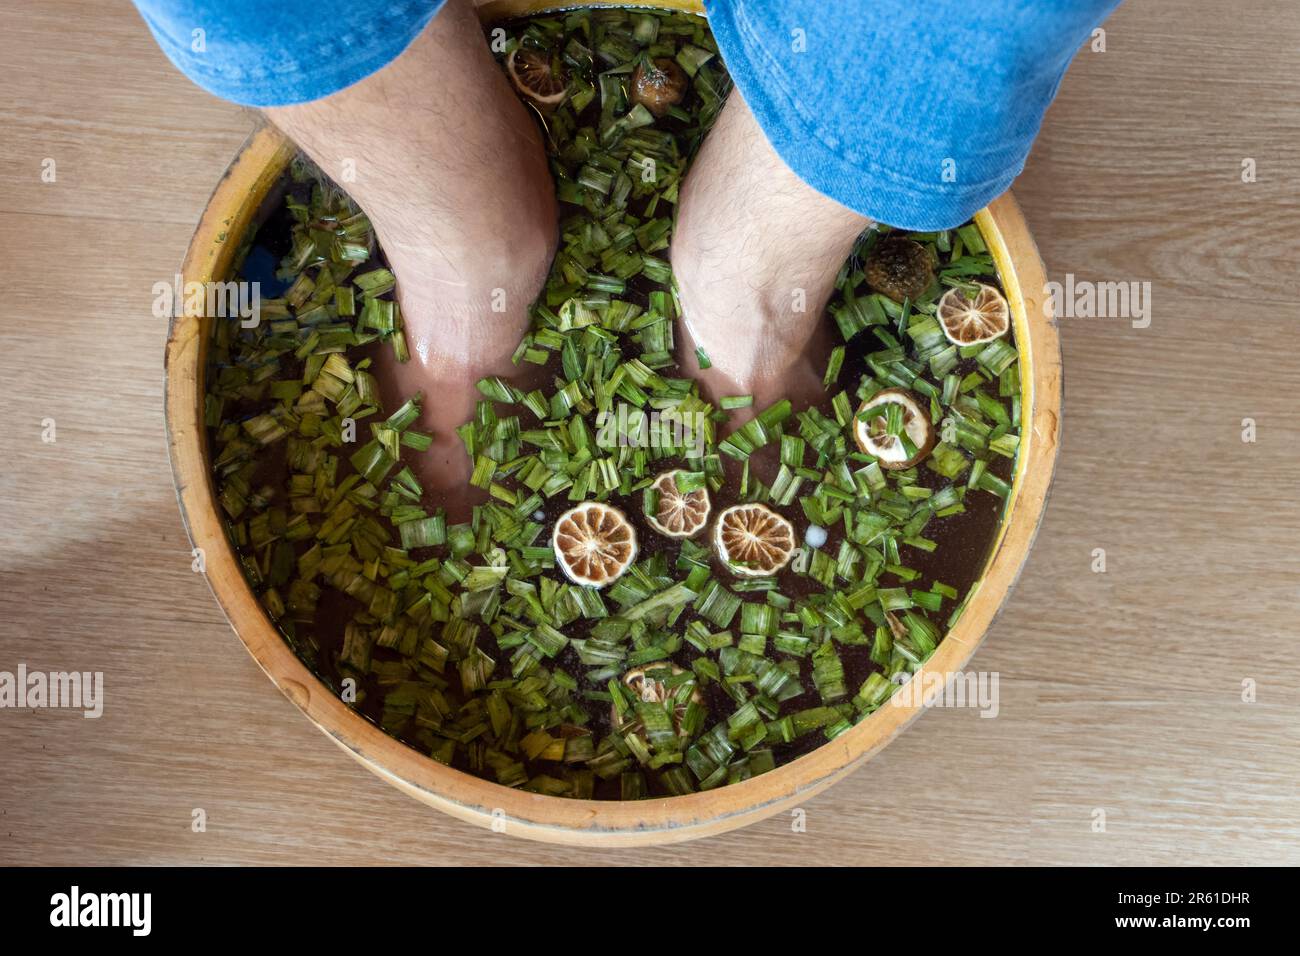 Un uomo si bagna i piedi in un bagno alle erbe Foto Stock